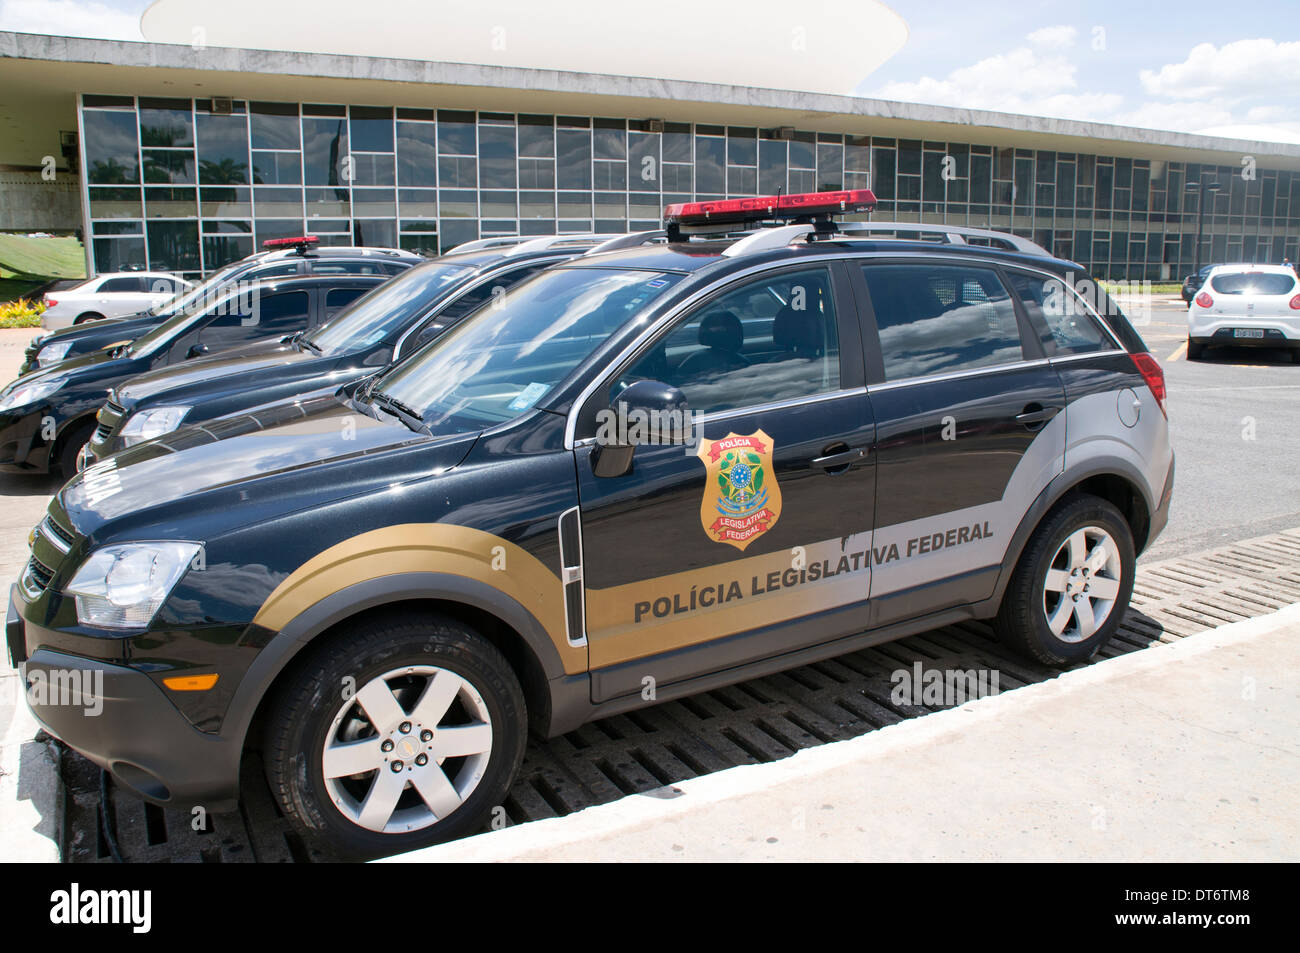 Un véhicule appartenant à la Police législative à Brasilia, Brésil. Banque D'Images